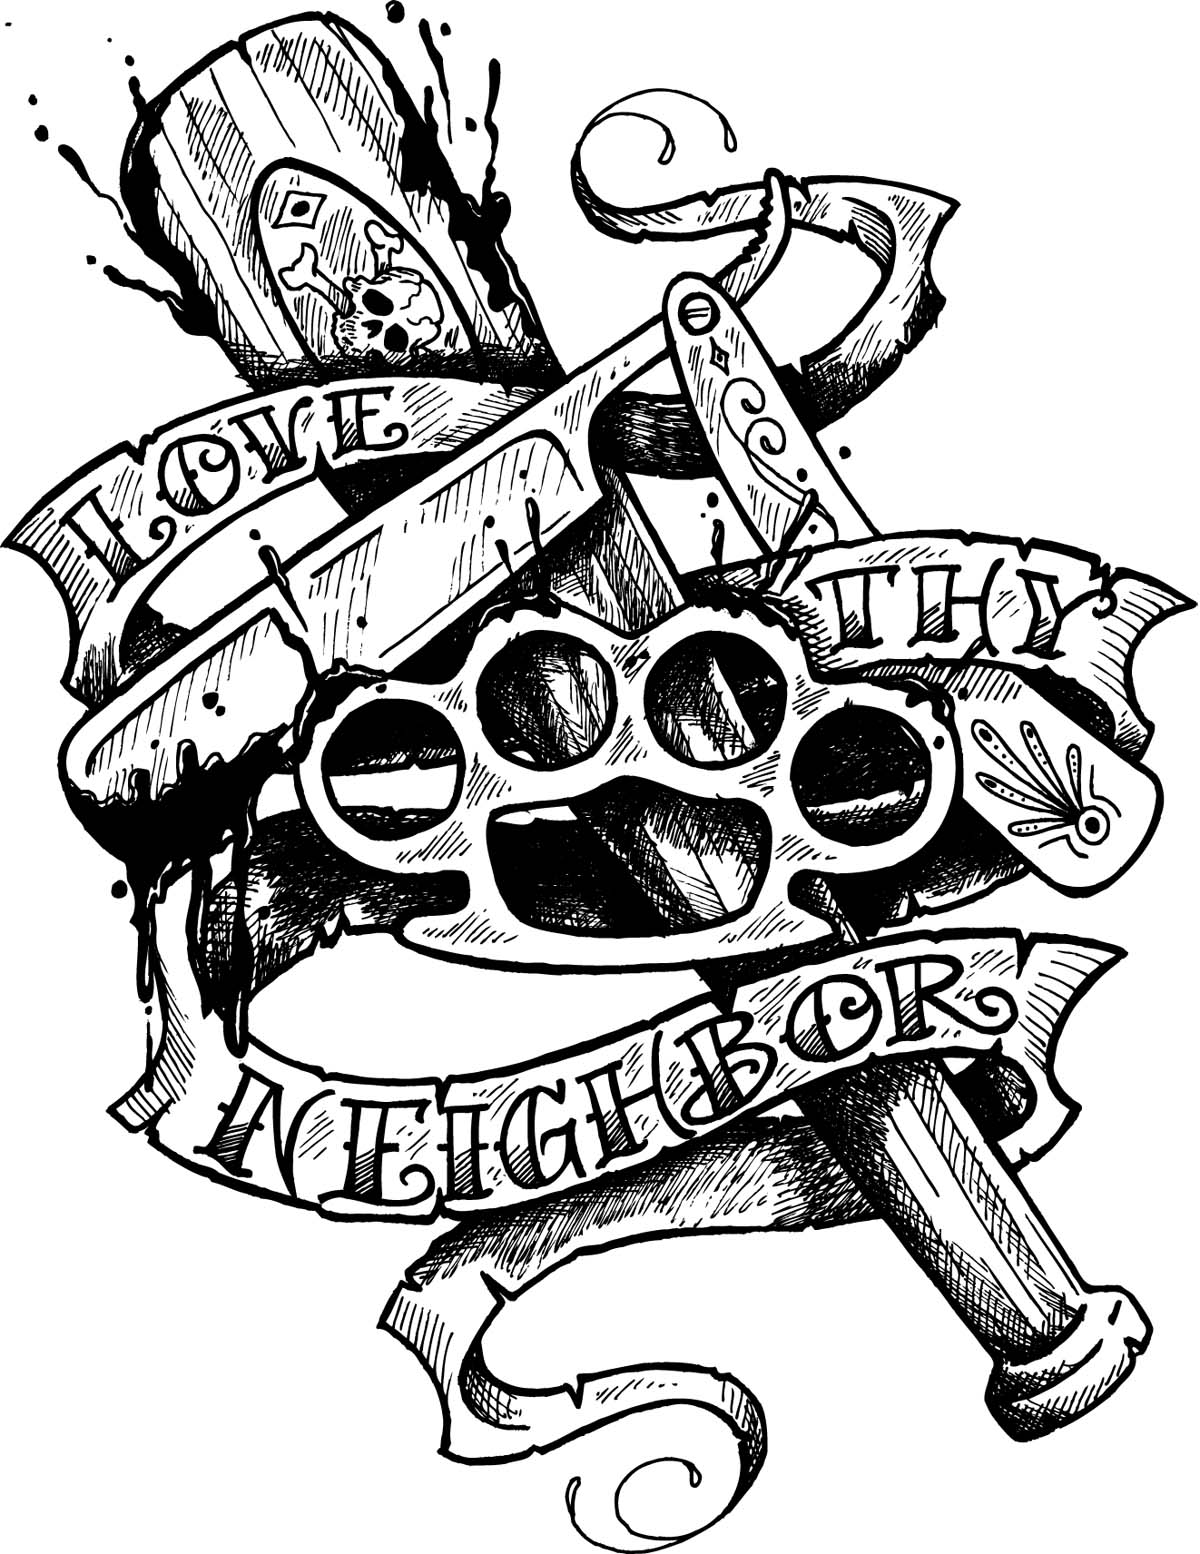 http://1.bp.blogspot.com/_eKiZYBPWOyw/TPfdGTtKFsI/AAAAAAAAAkA/nxq2Y5StJuk/s1600/love_thy_neighbor_tattoo_flash_by_SD_Designs.jpg